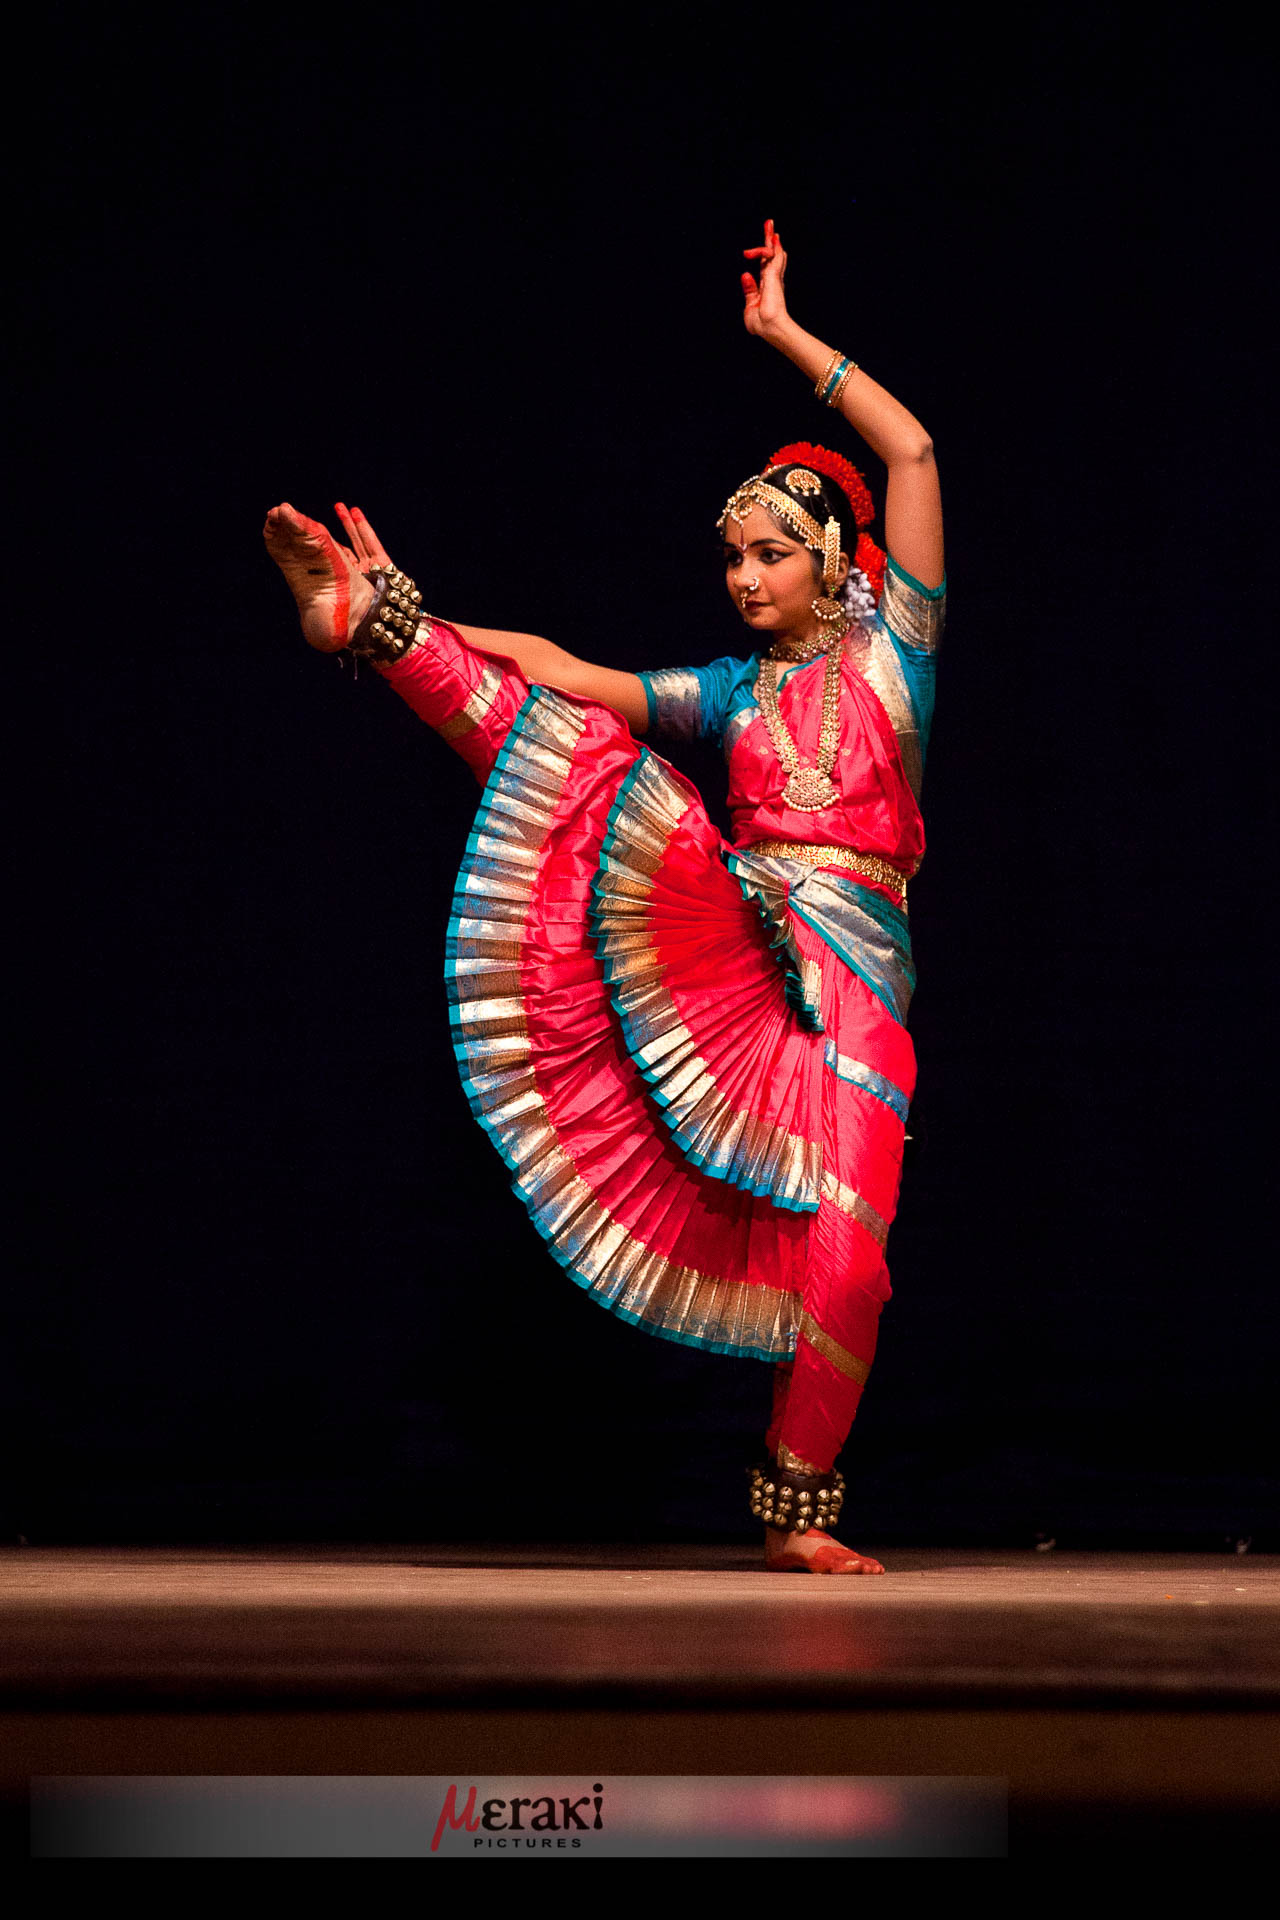 Tamil Nadu State: Indian Classical Dance in Chennai